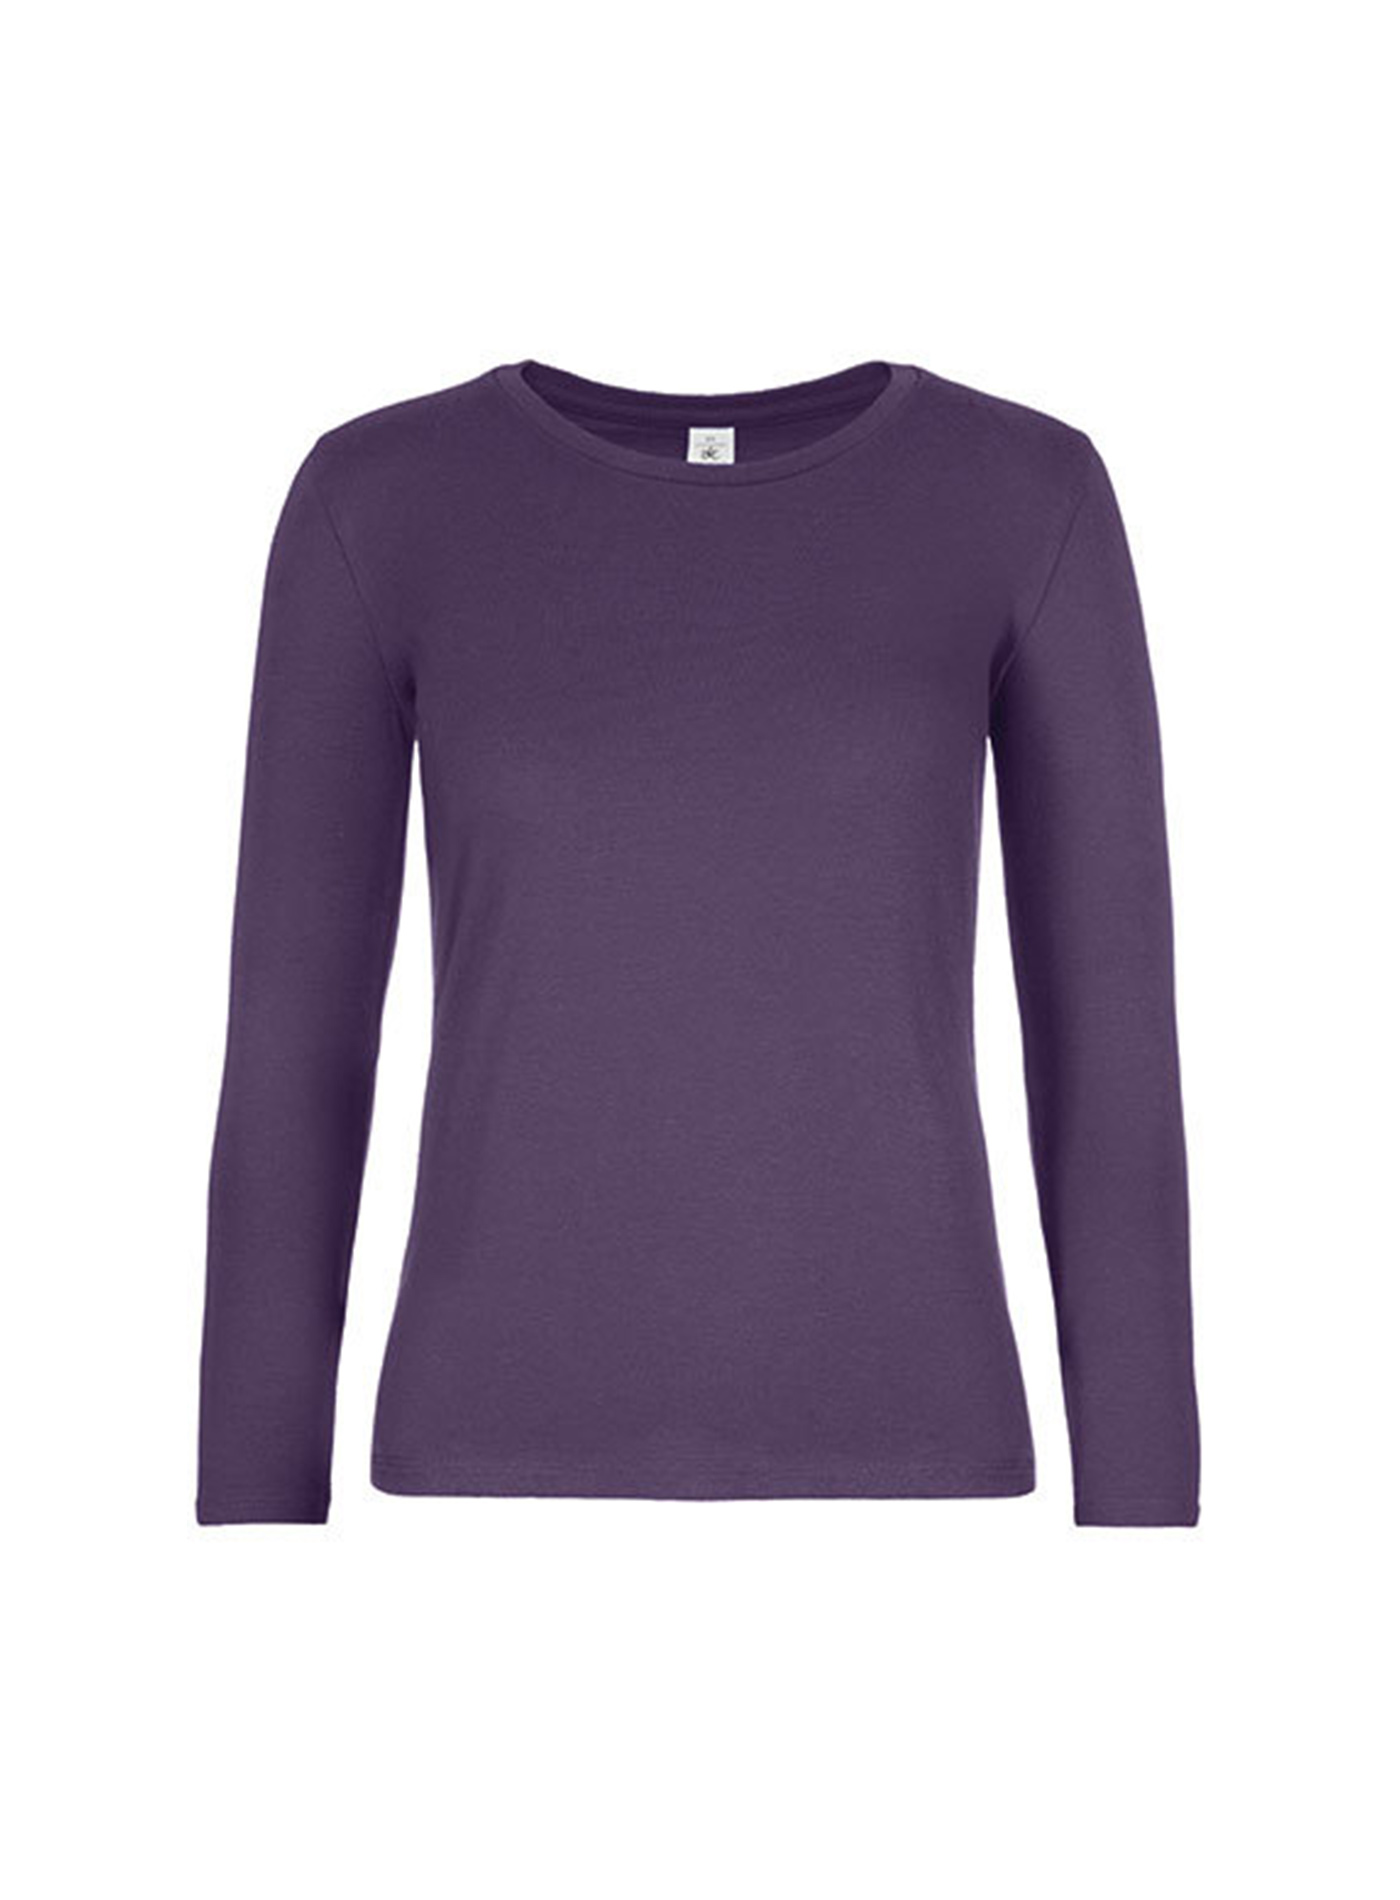 Dámské tričko s dlouhým rukávem B&C Collection - Tmavě fialová L